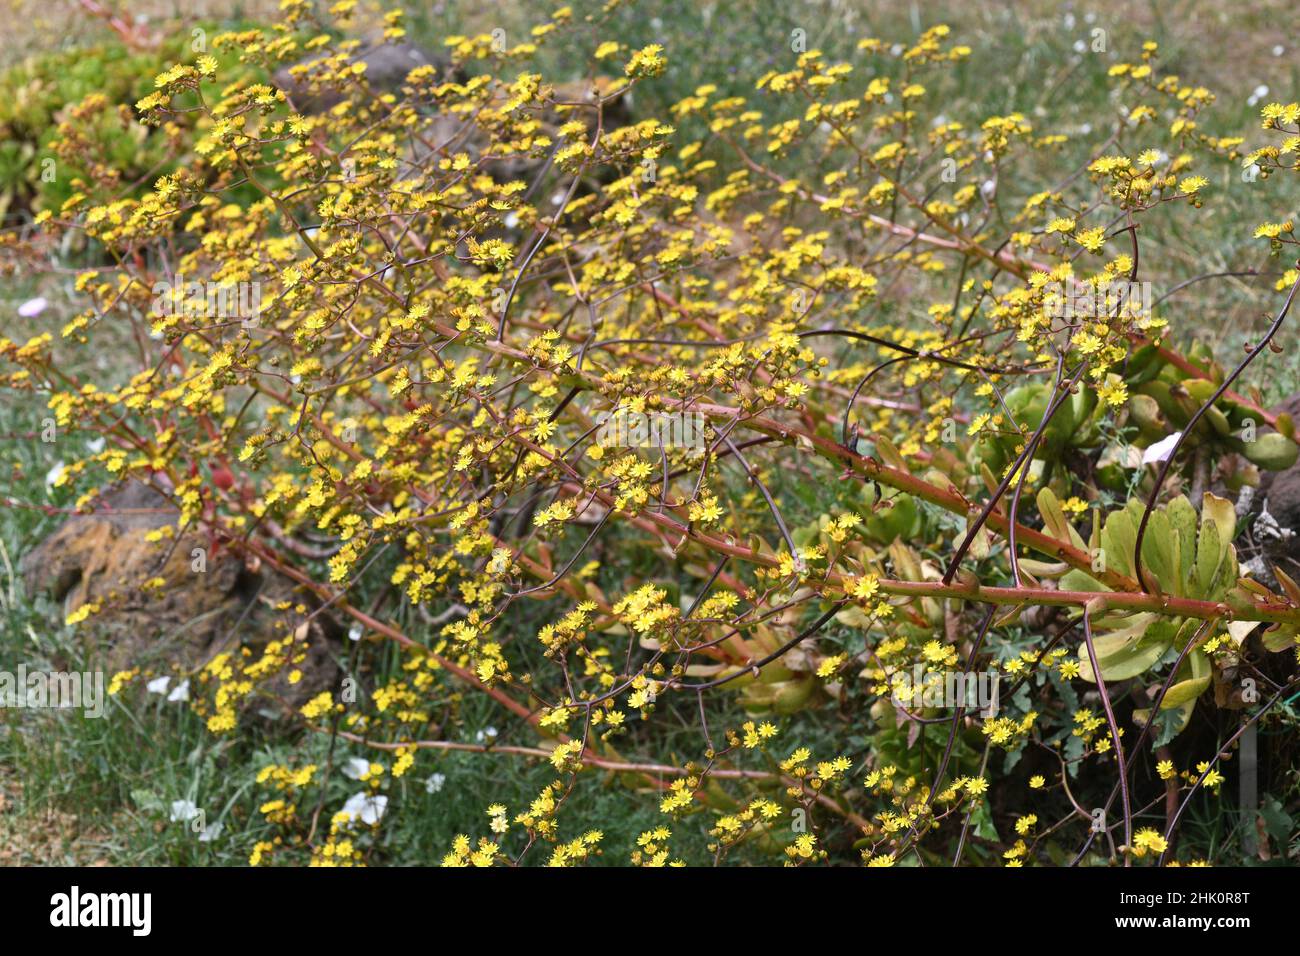 Saiao (Aeonium glutinosum) is a succulent shrub endemic to Madeira, Macaronesia, Portugal. Stock Photo